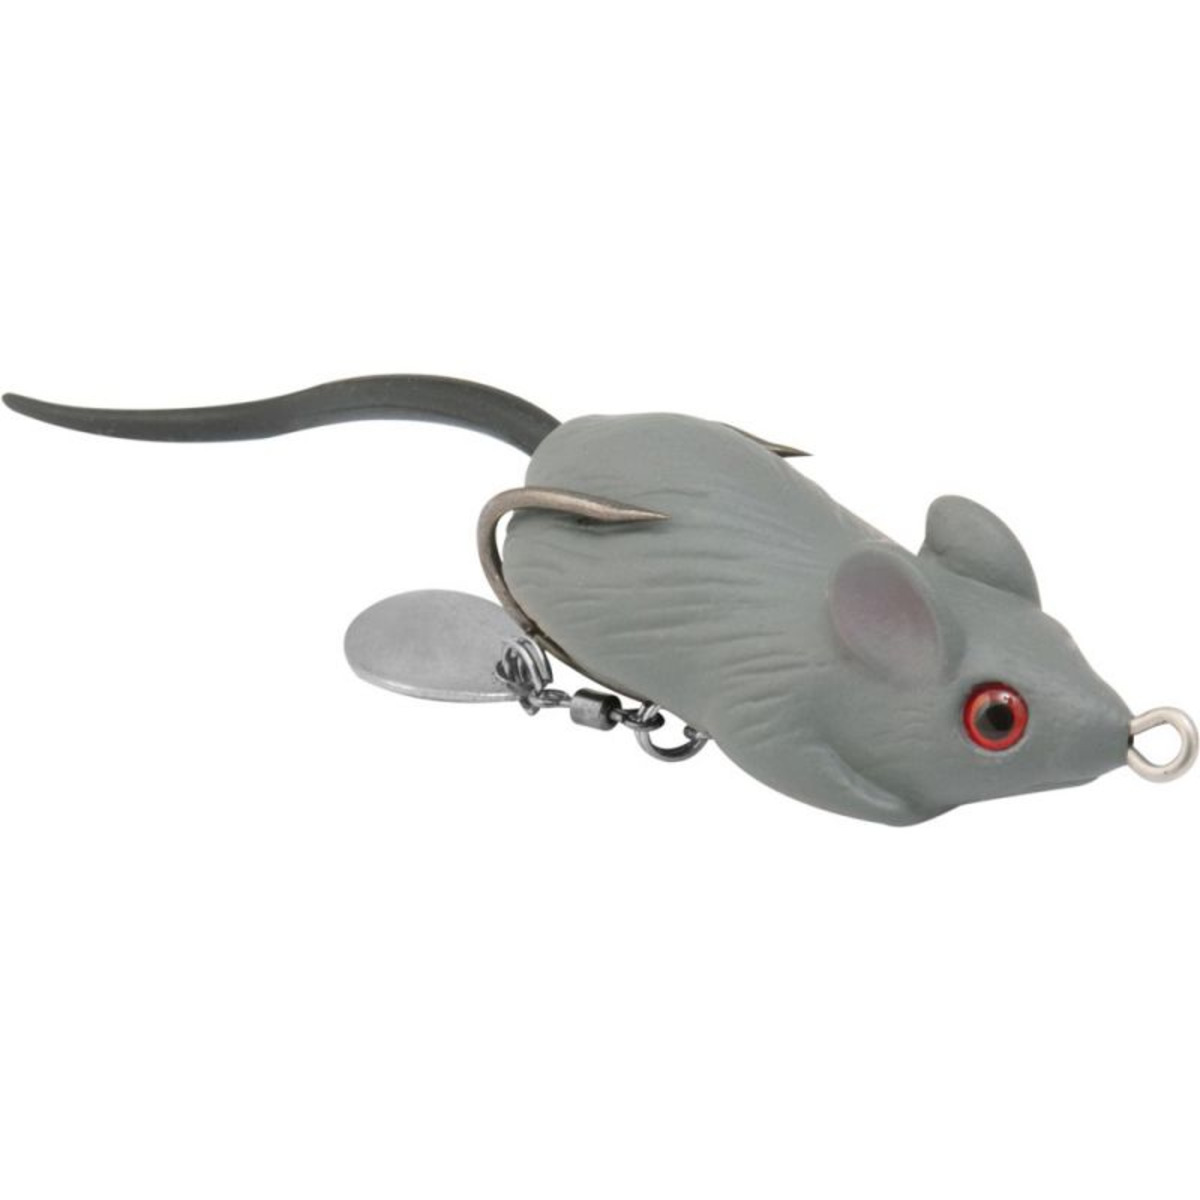 Rapture Dancer Mouse - 10.0 g - 45 mm - Natural Grey